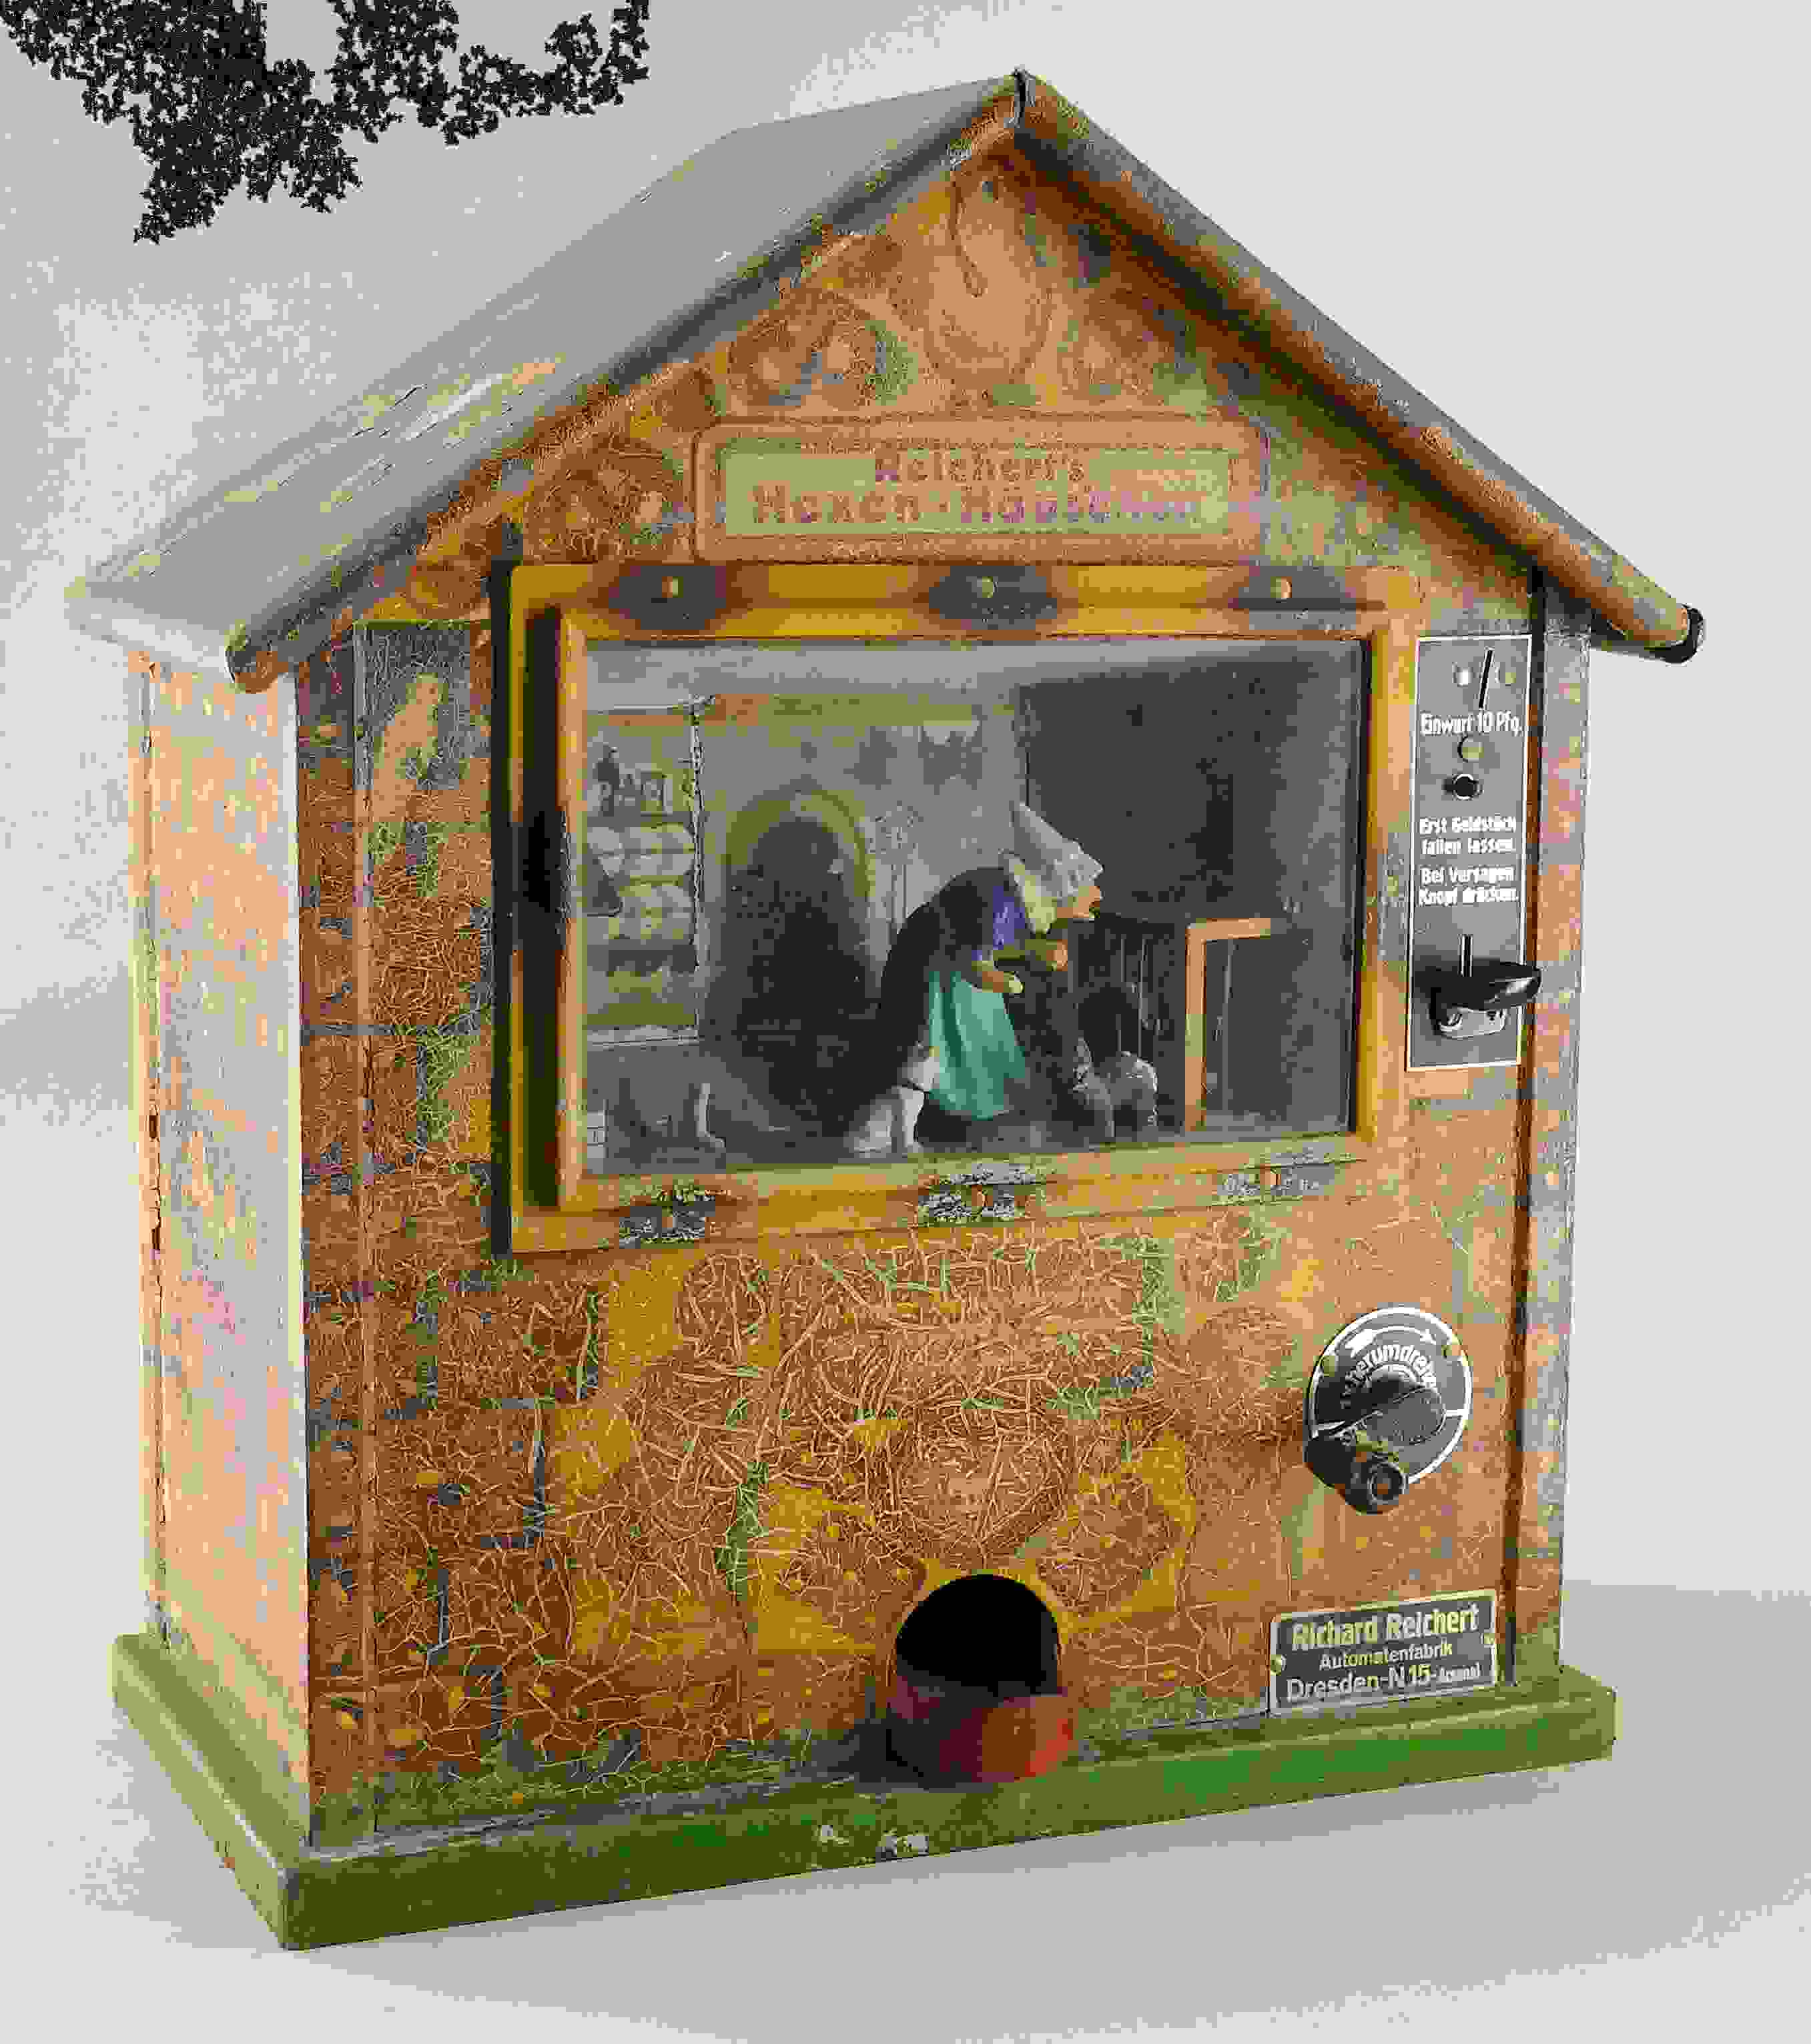 Reichert's Hexen-Häuschen Automat 